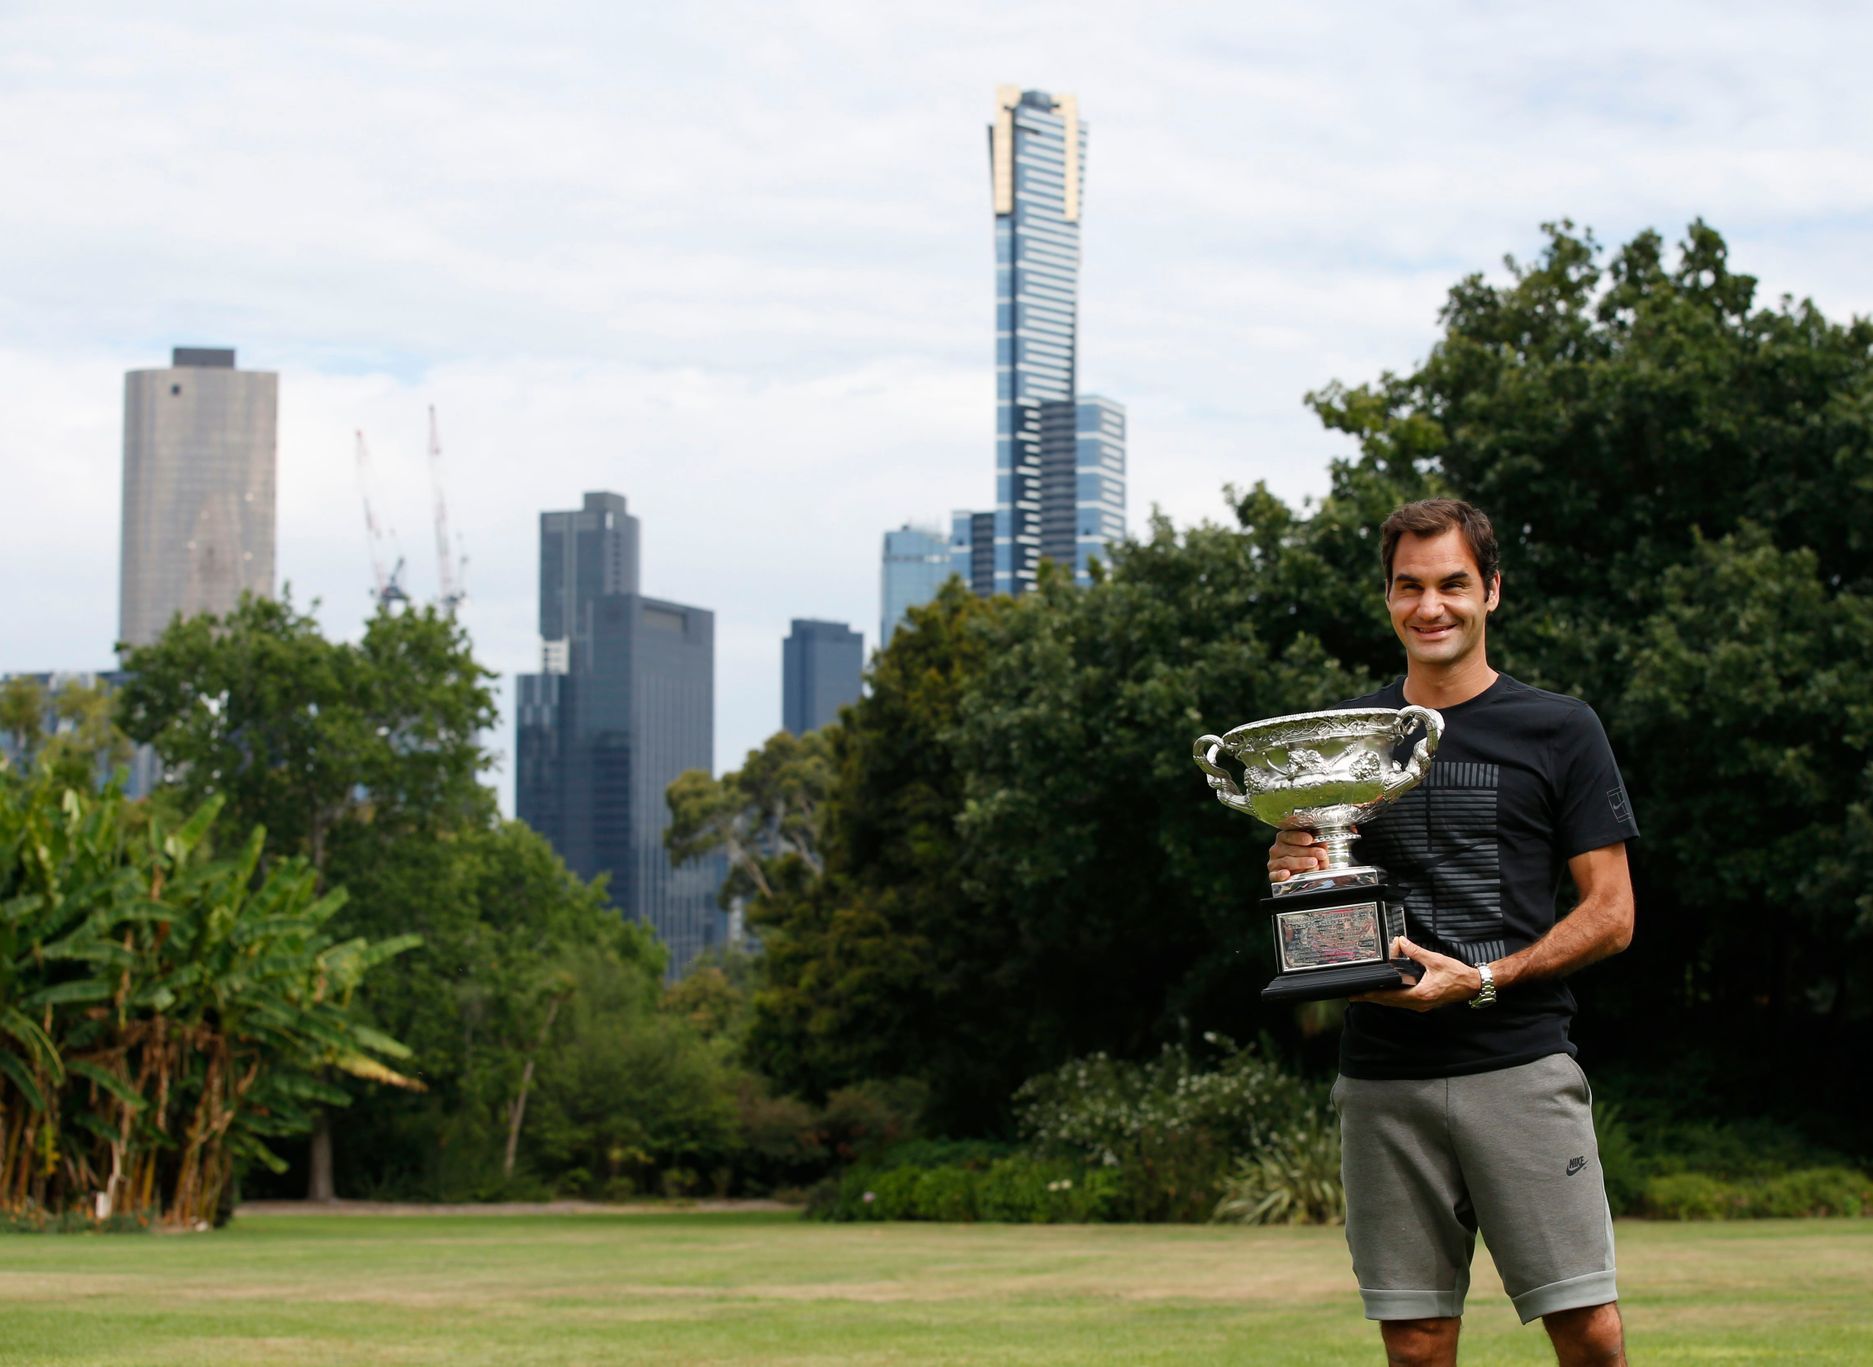 Australian Open 2018: Roger Federer